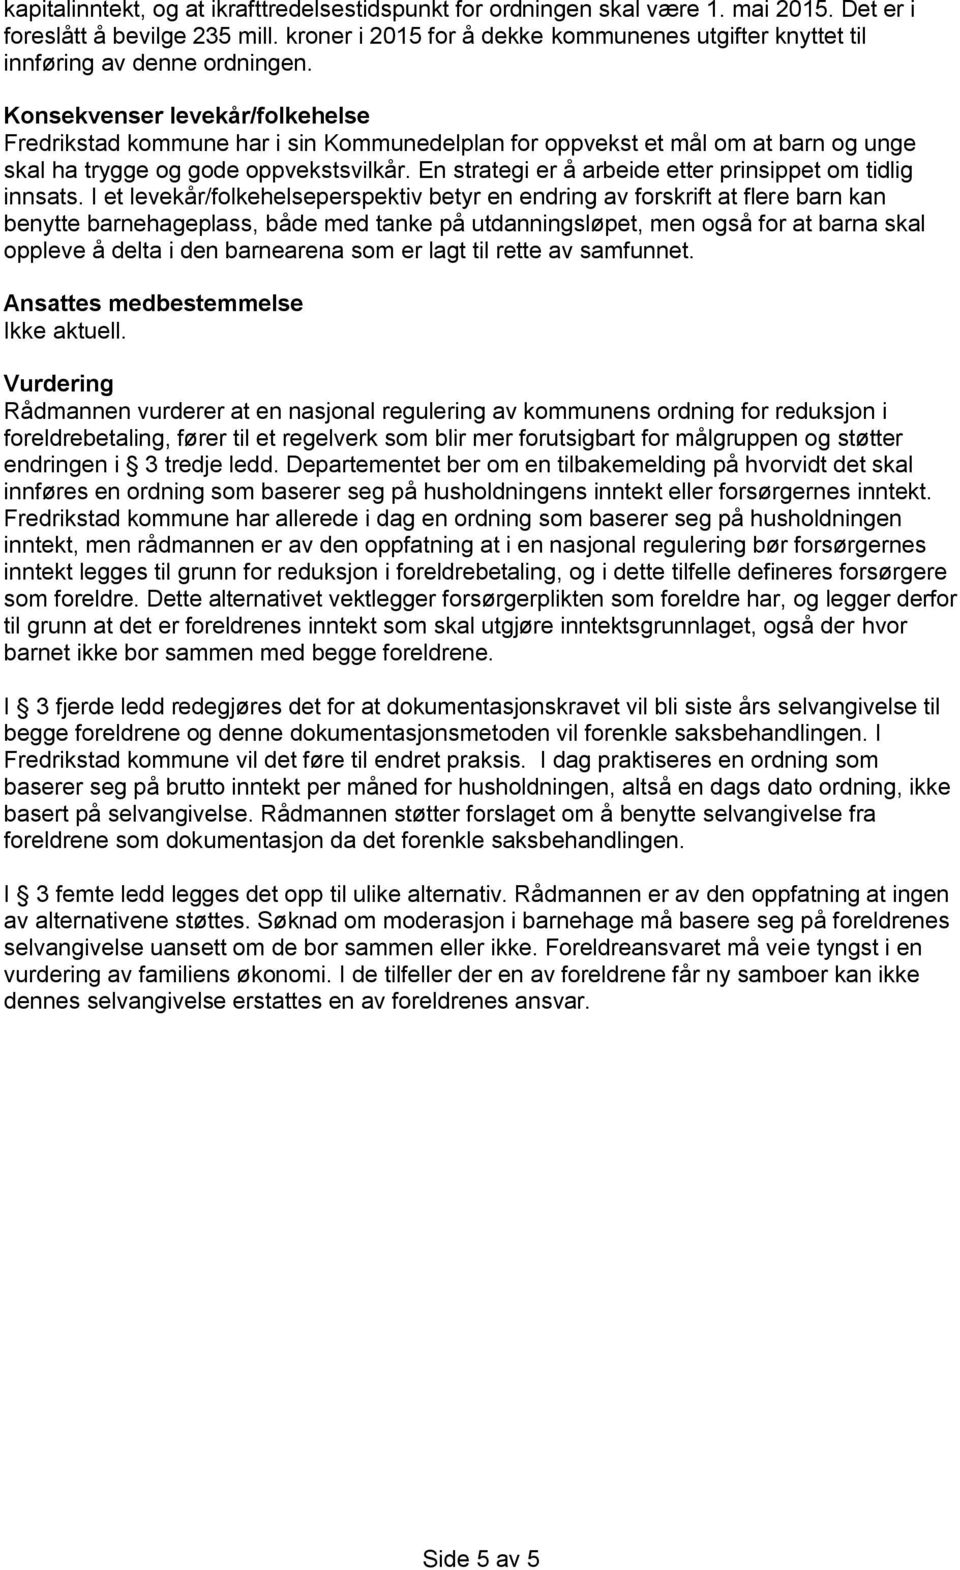 Konsekvenser levekår/folkehelse Fredrikstad kommune har i sin Kommunedelplan for oppvekst et mål om at barn og unge skal ha trygge og gode oppvekstsvilkår.